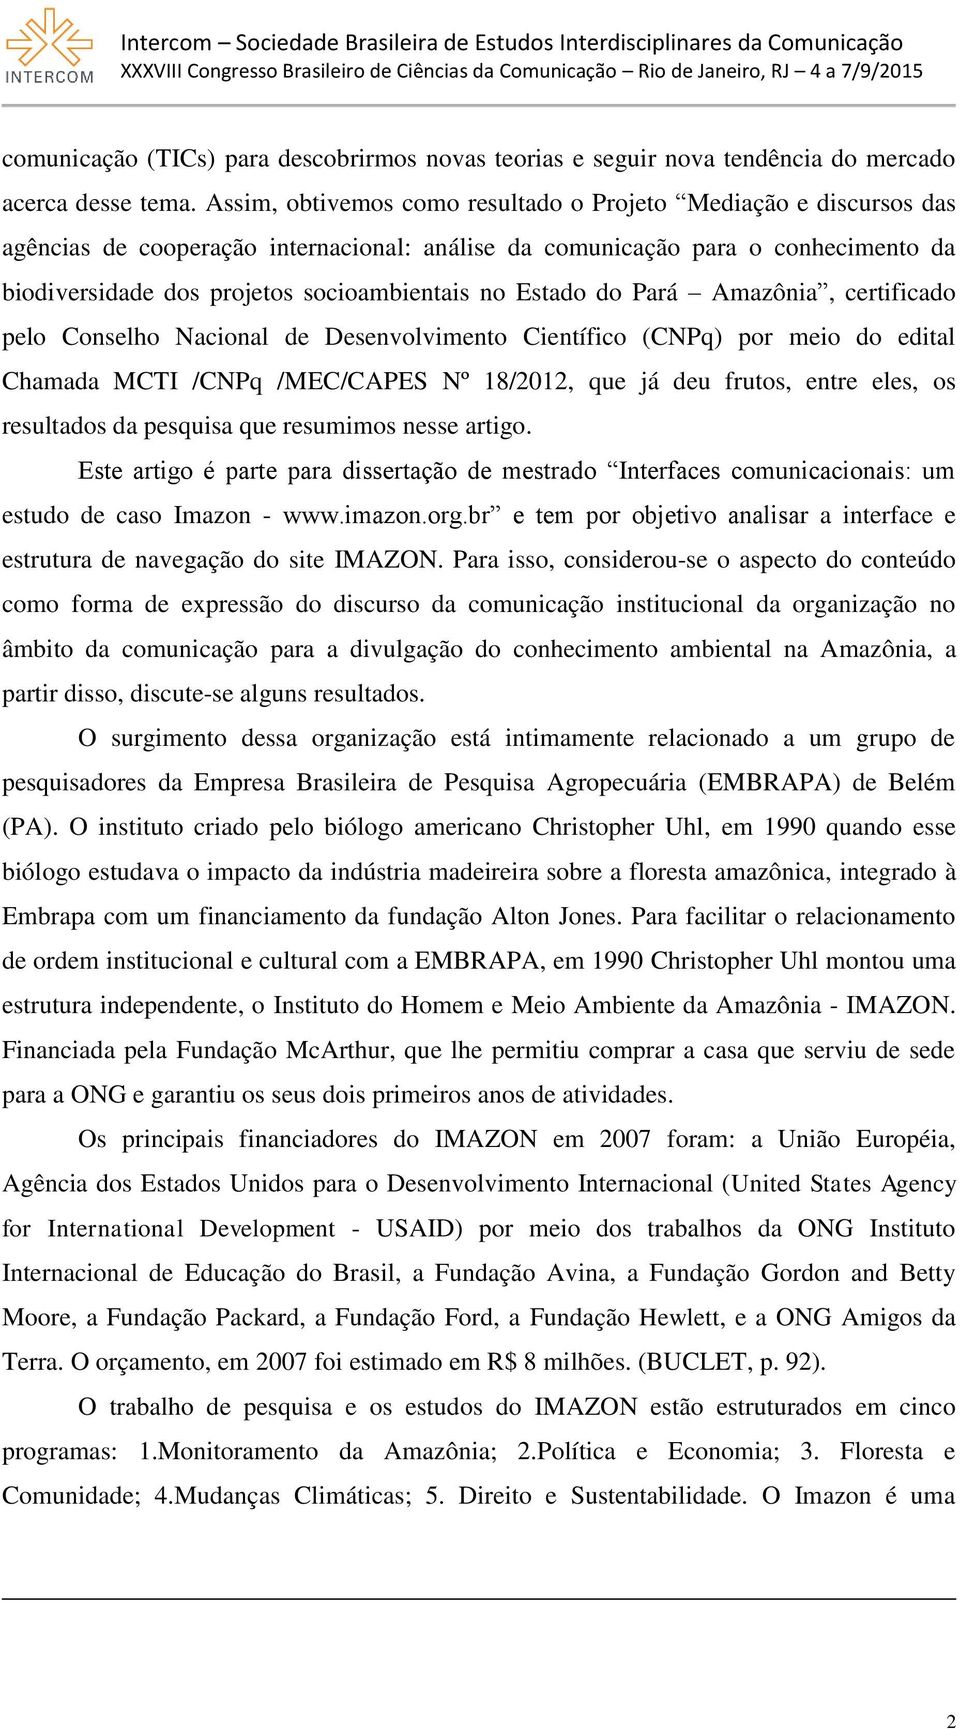 Estado do Pará Amazônia, certificado pelo Conselho Nacional de Desenvolvimento Científico (CNPq) por meio do edital Chamada MCTI /CNPq /MEC/CAPES Nº 18/2012, que já deu frutos, entre eles, os